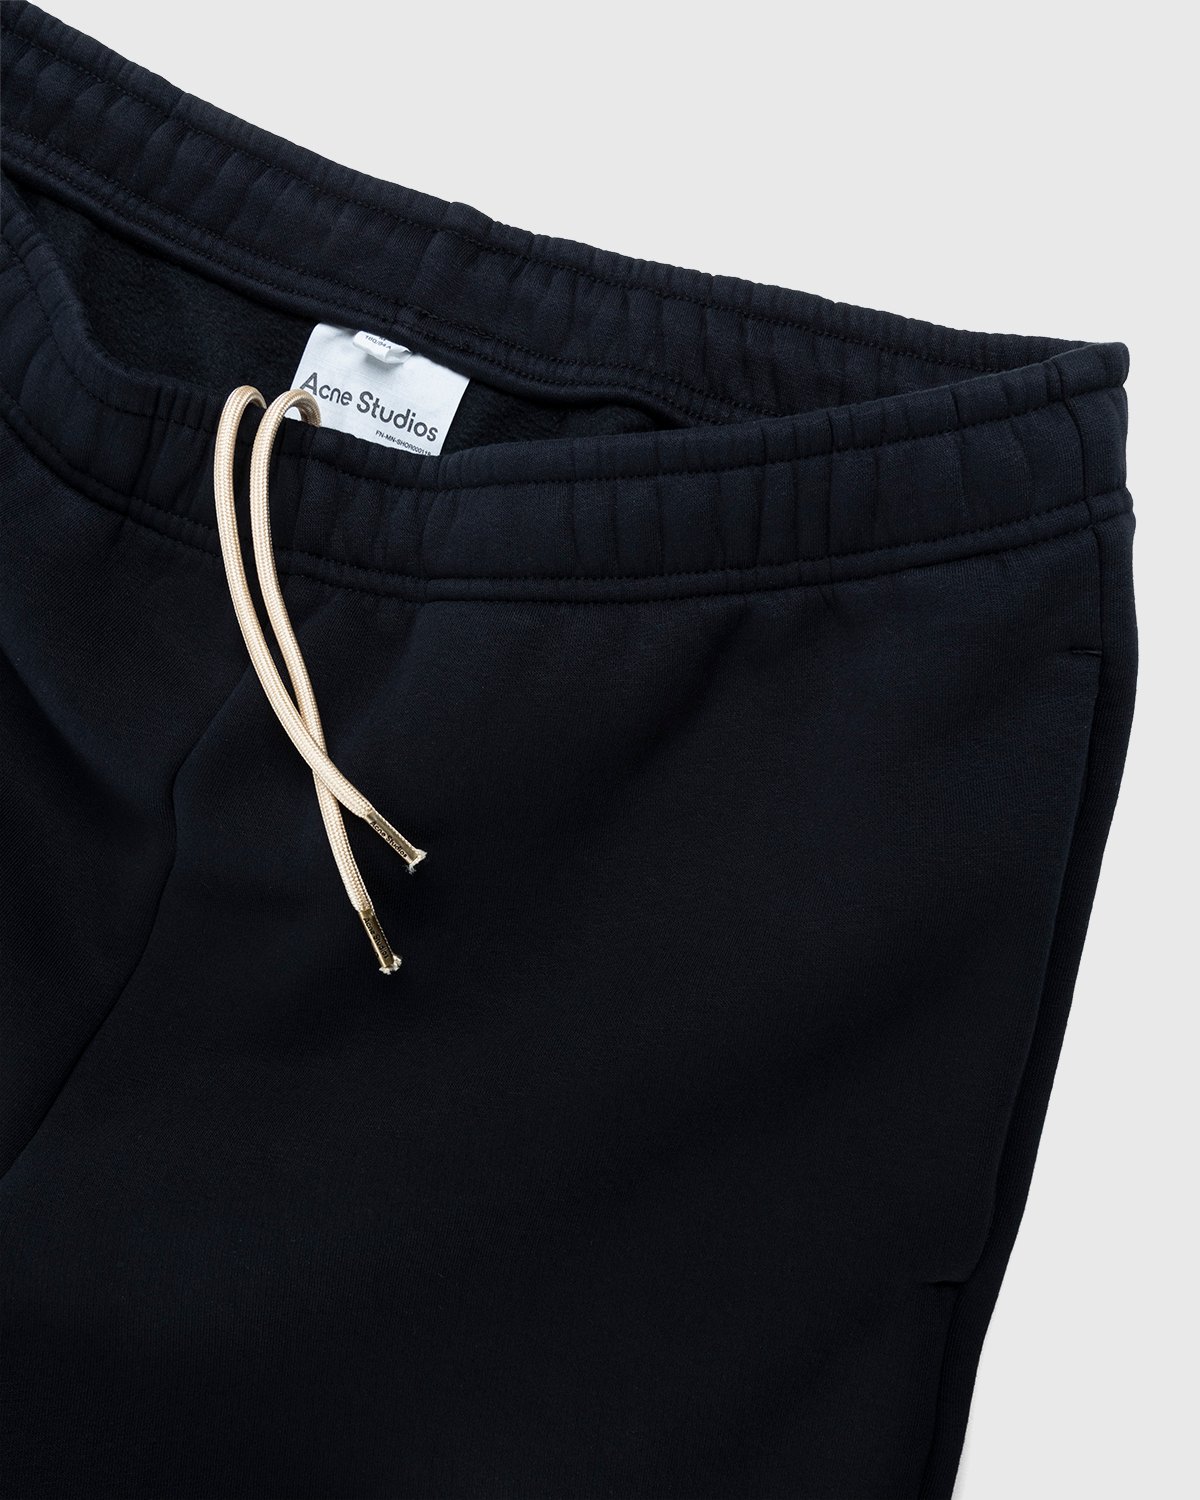 Acne Studios - Cotton Sweat Shorts Black - Clothing - Black - Image 3